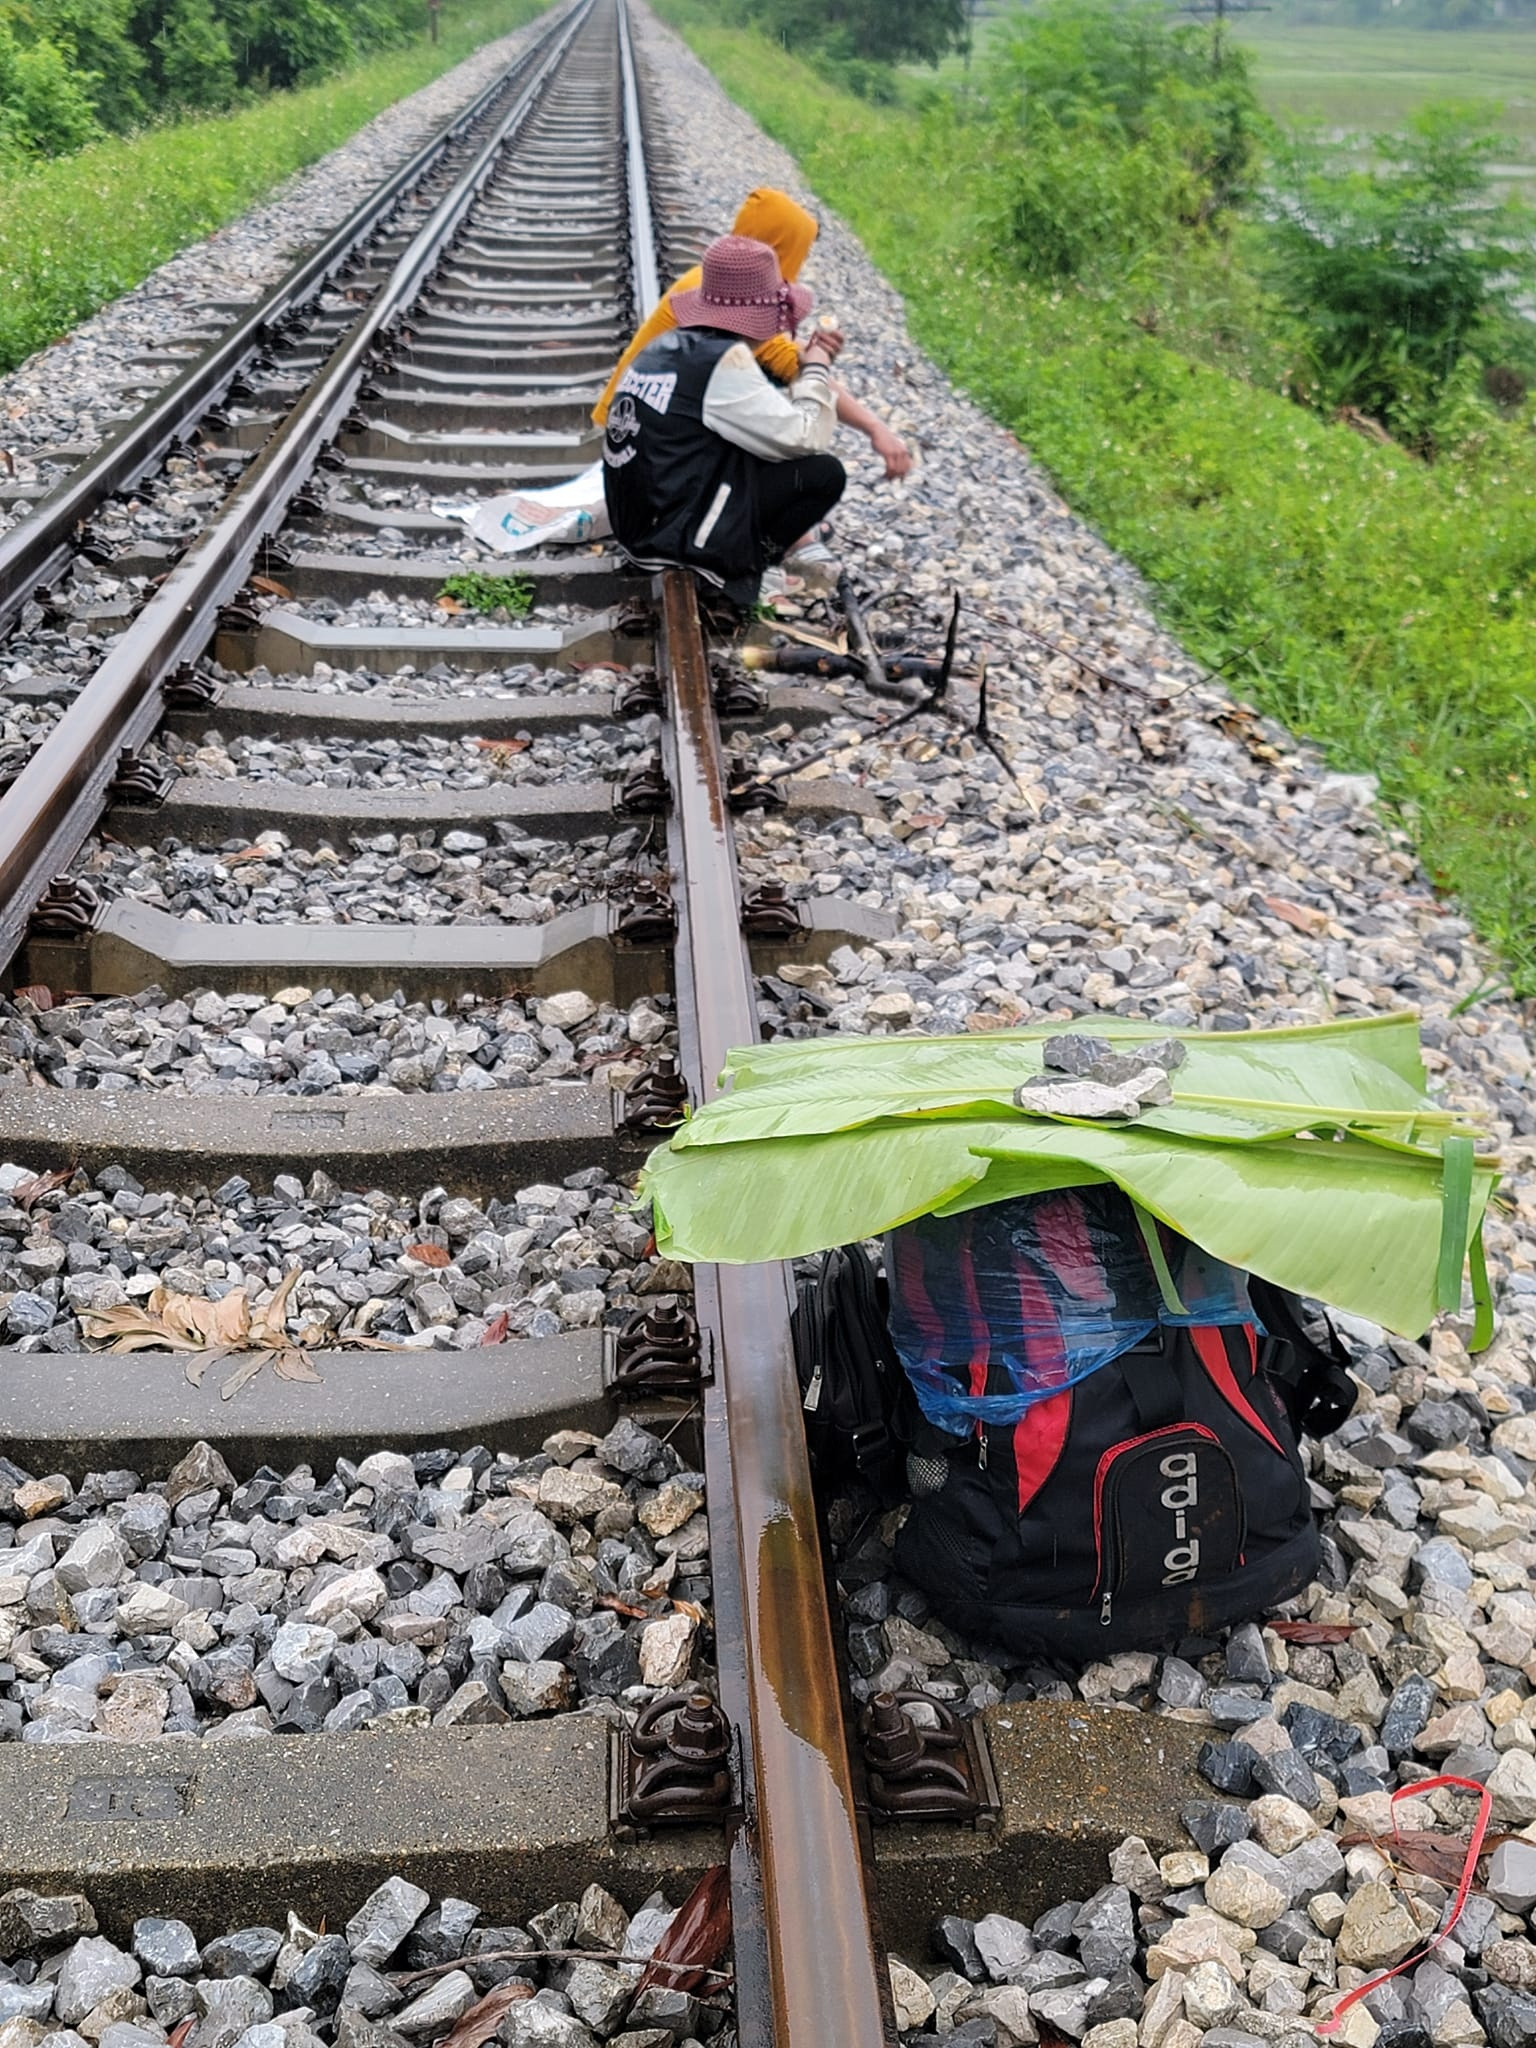 Bị chủ bùng lương, vợ chồng HMông đi bộ 7 ngày từ Hà Nội về Hà Giang - 1